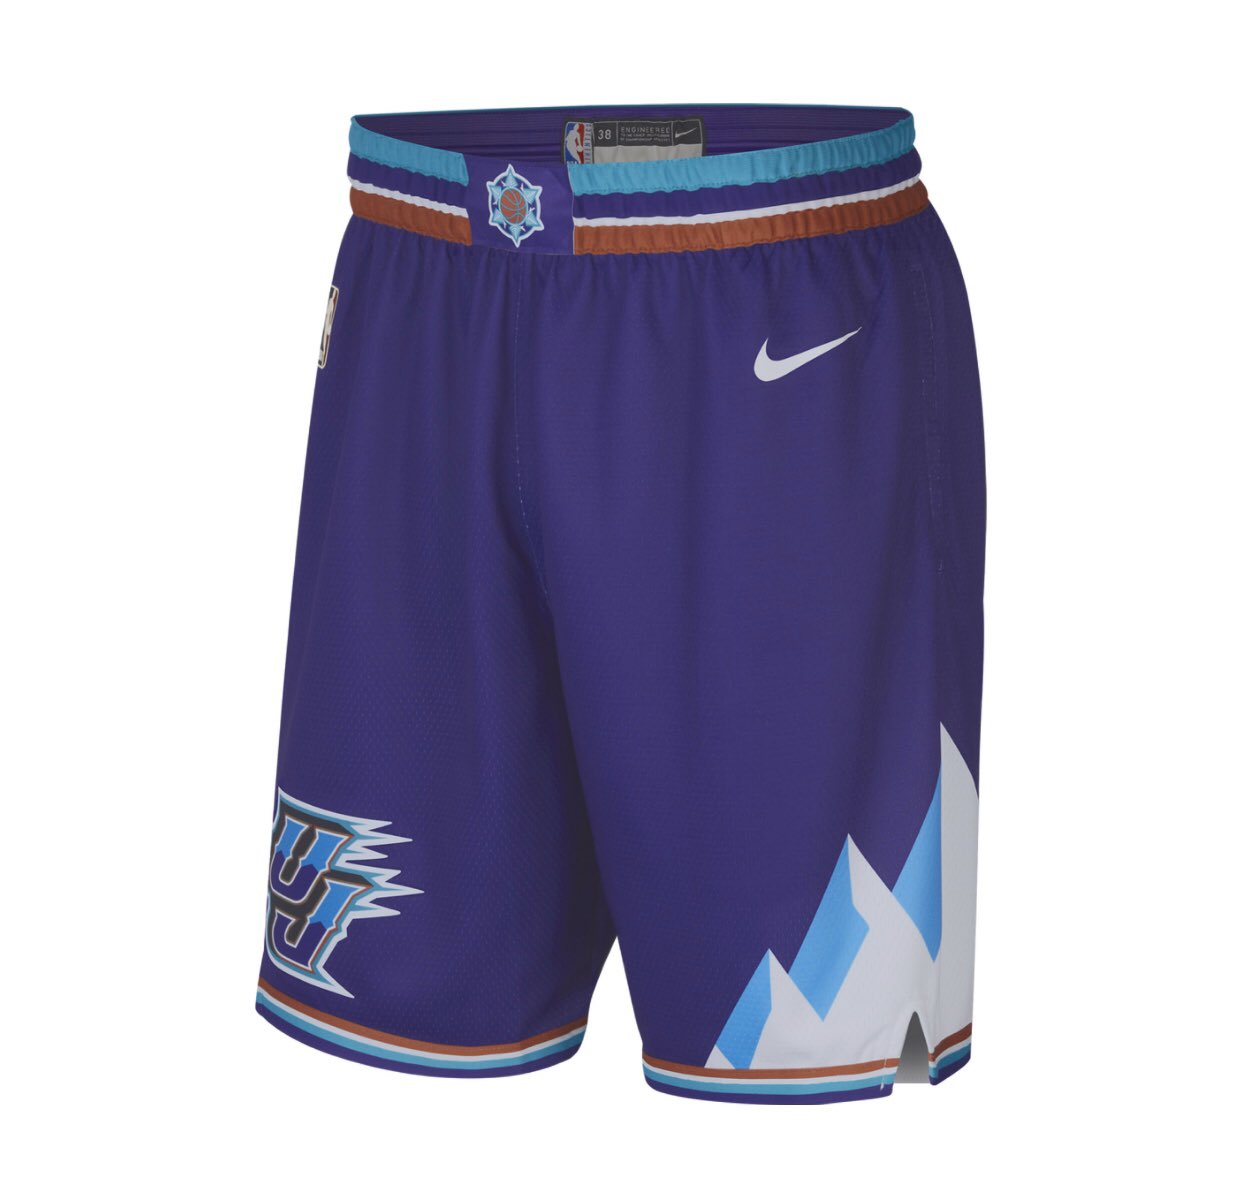 shorts utah jazz purple mountain jersey